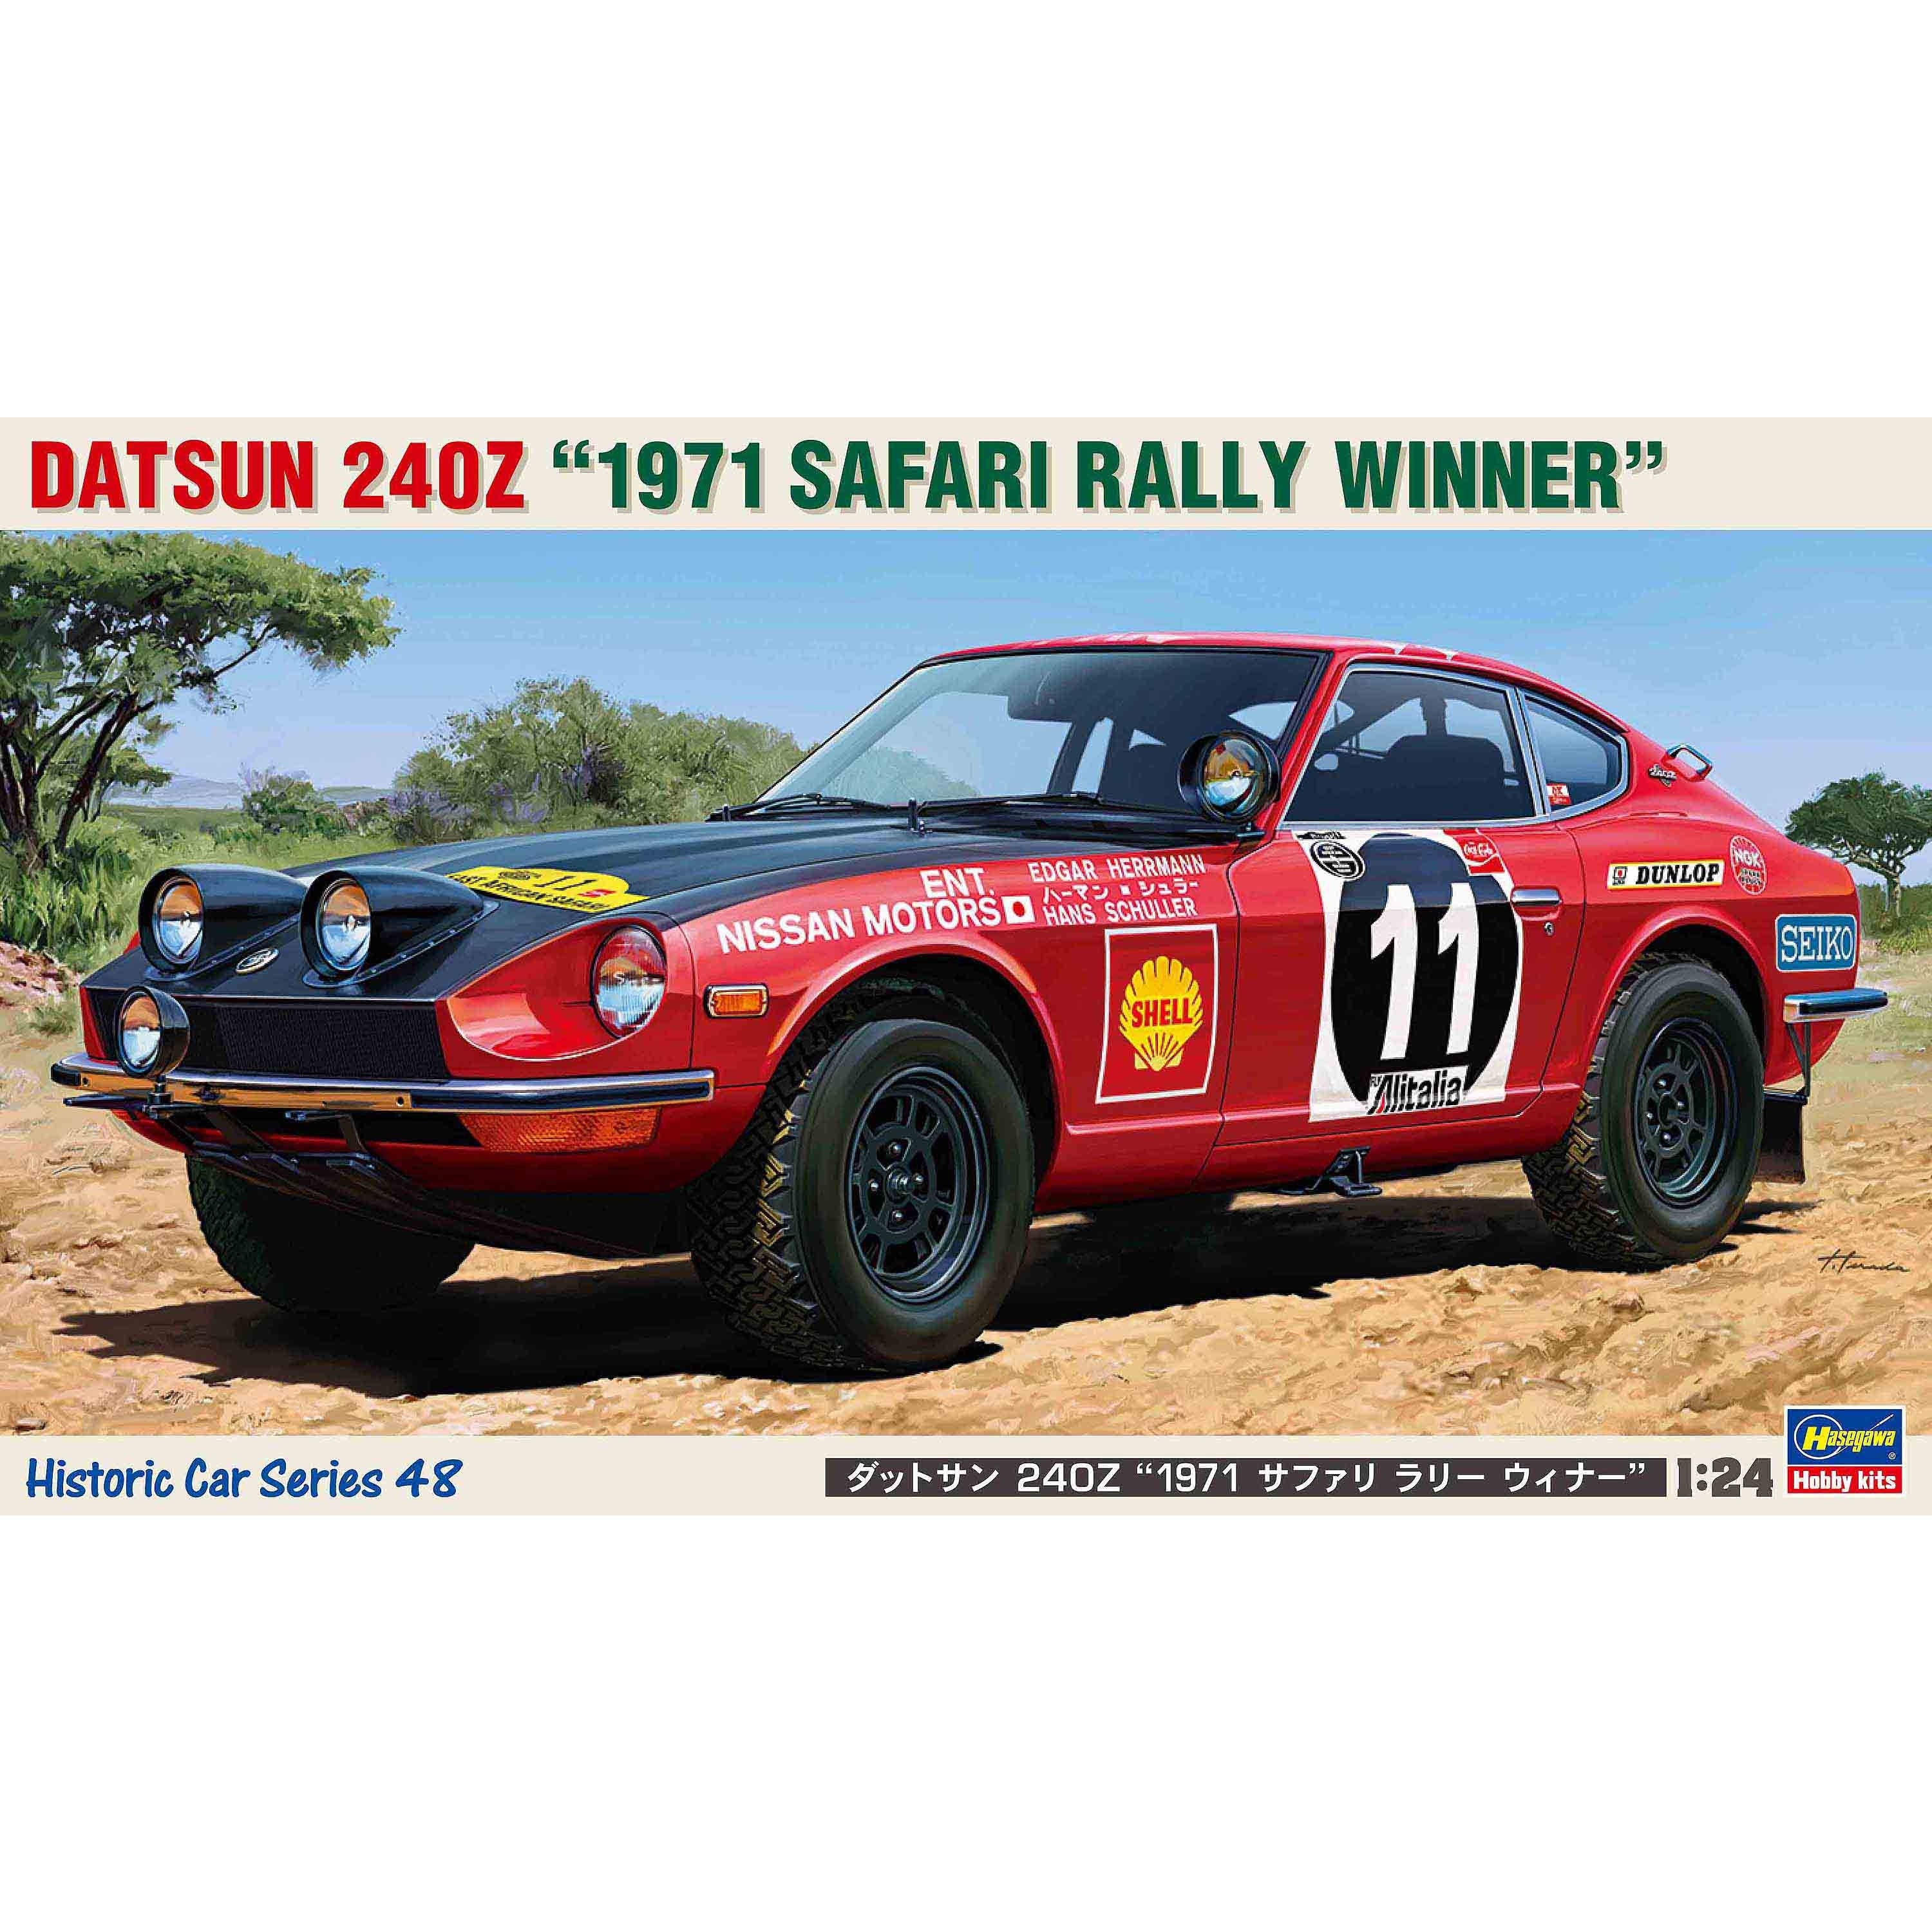 Datsun 240Z "1971 Safari Rally Winner" 1/24 Model Car Kit #21148 by Hasegawa